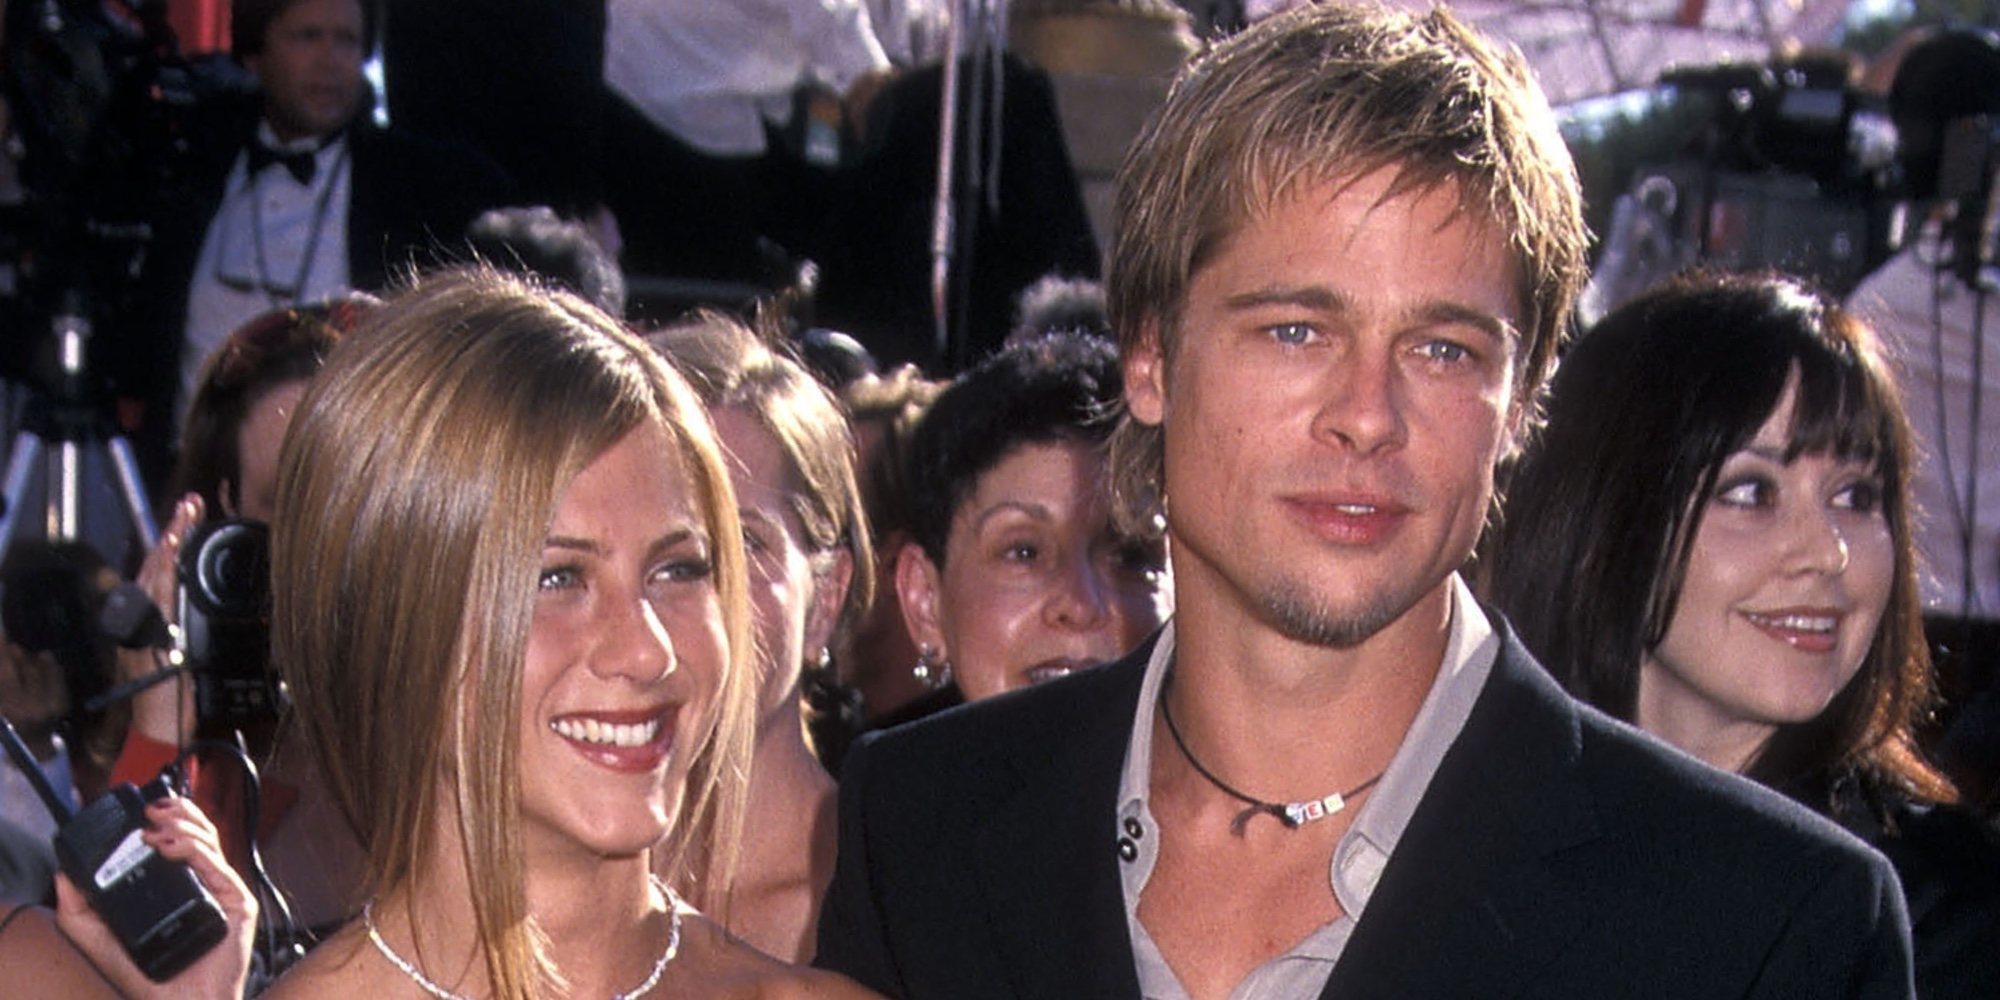 ¿Están Jennifer Aniston y Brad Pitt a las puertas de su reconciliación?